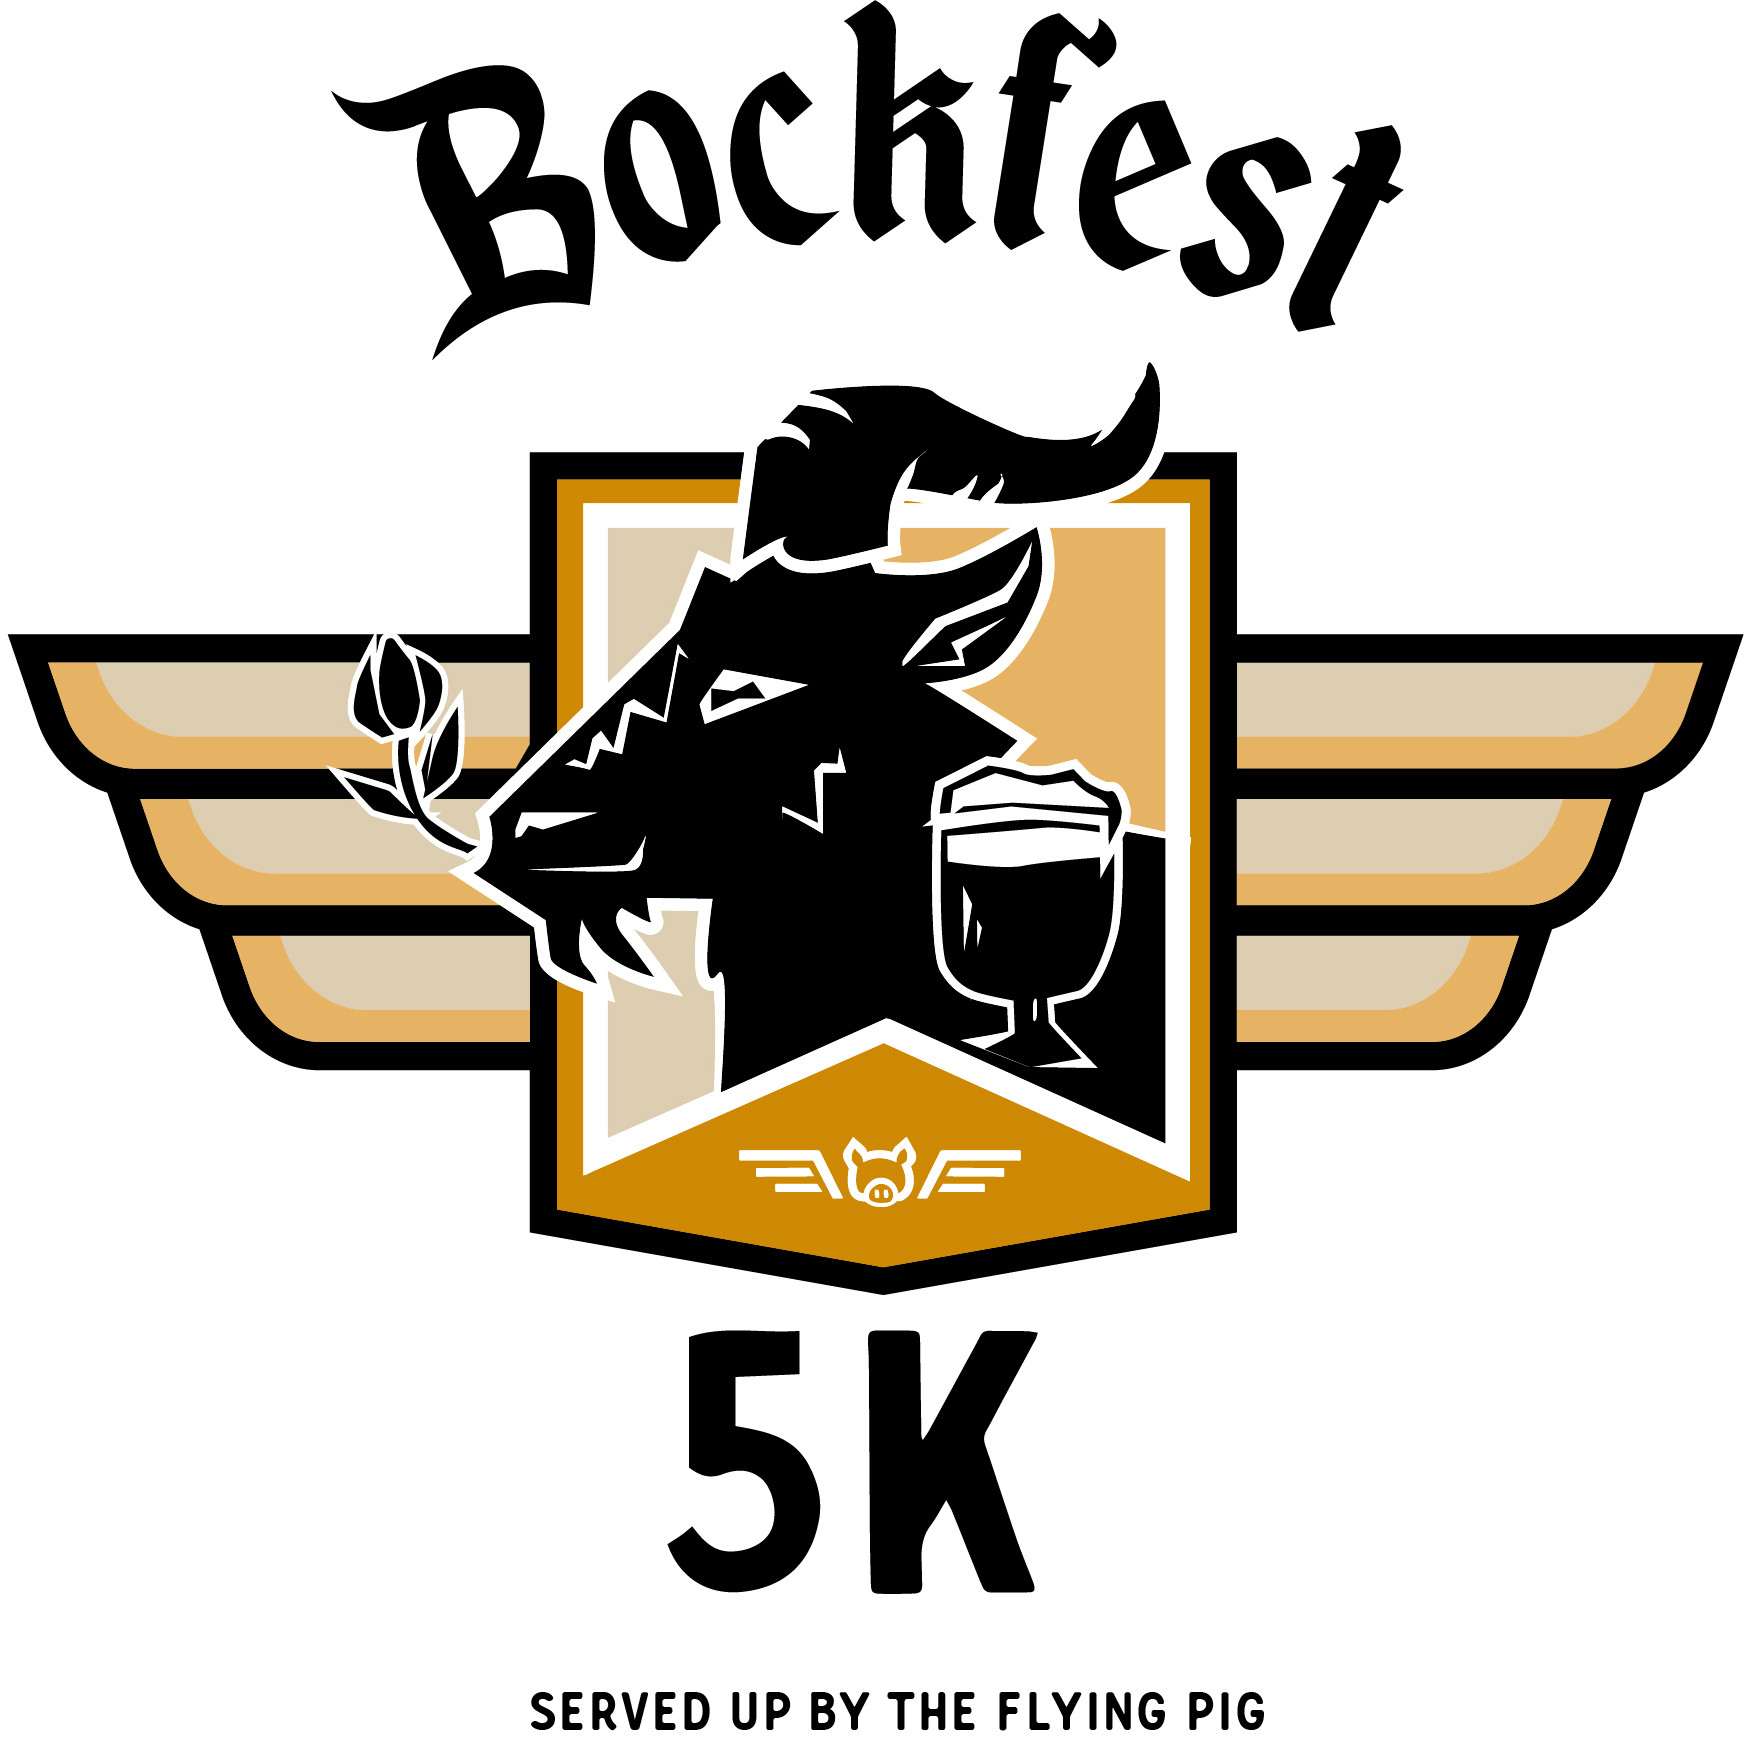 Bockfest 5K logo on RaceRaves